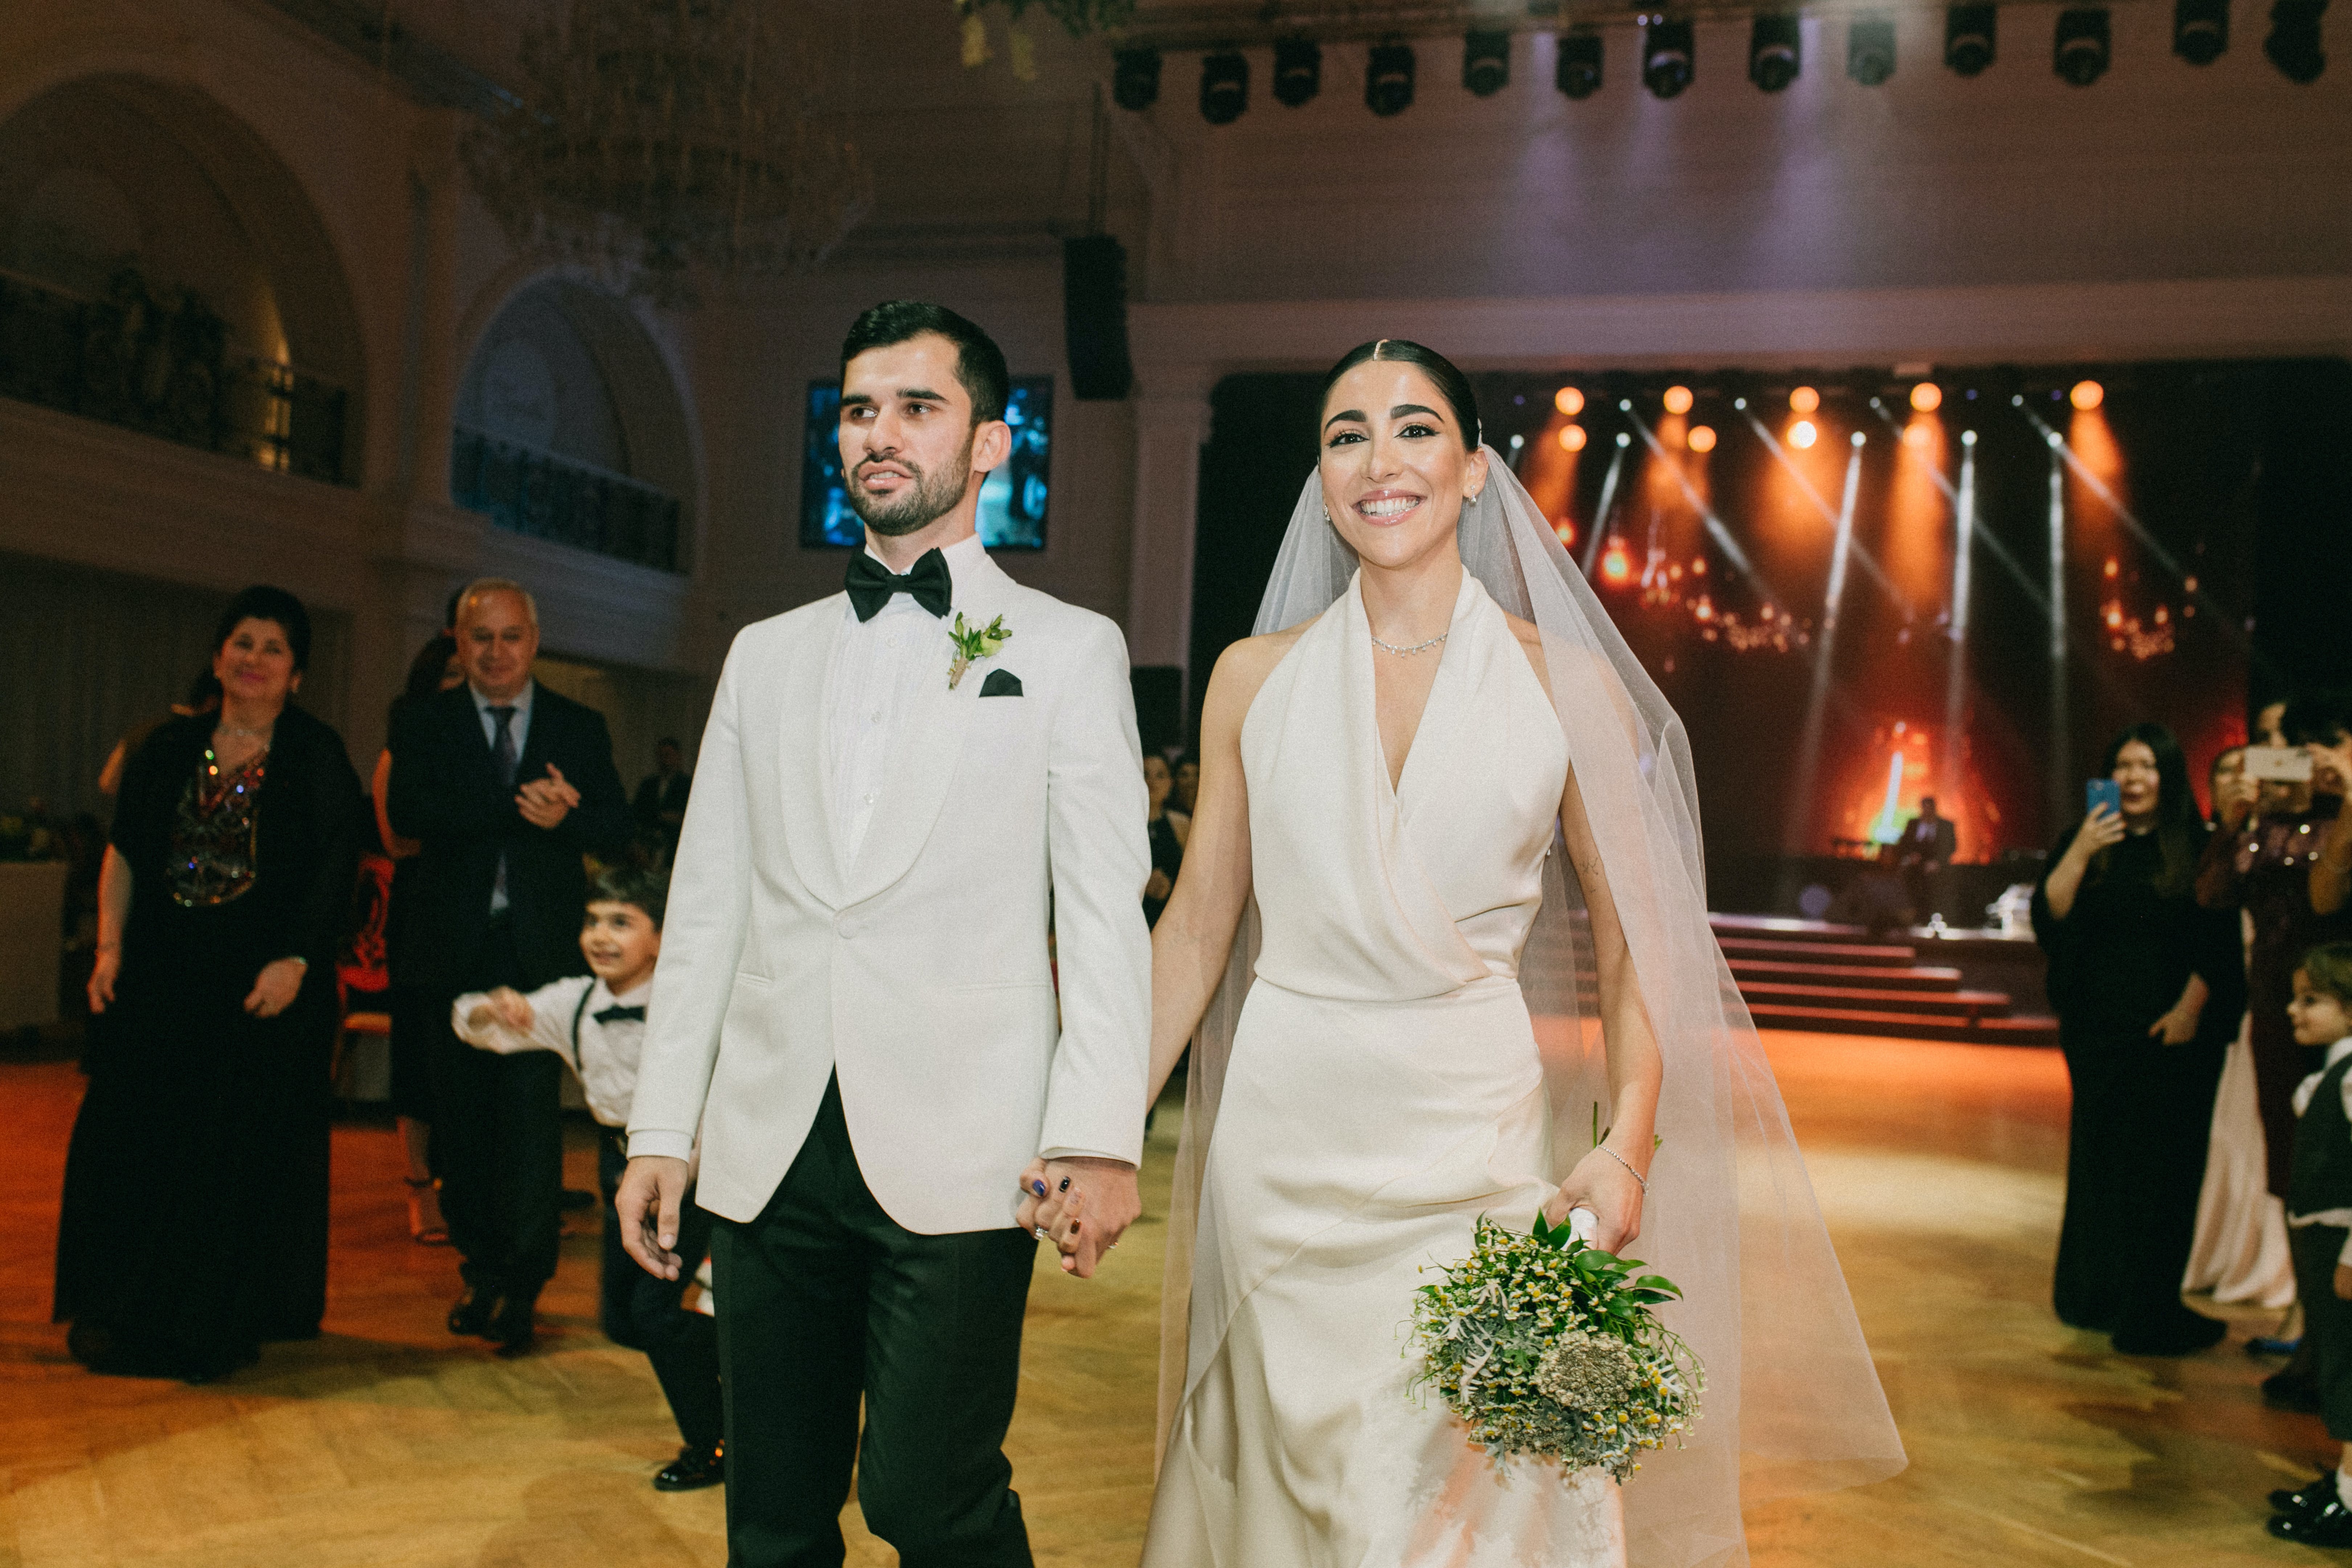 Der Bräutigam und die Braut gehen Hand in Hand am Hochzeitsort | Quelle: Pexels